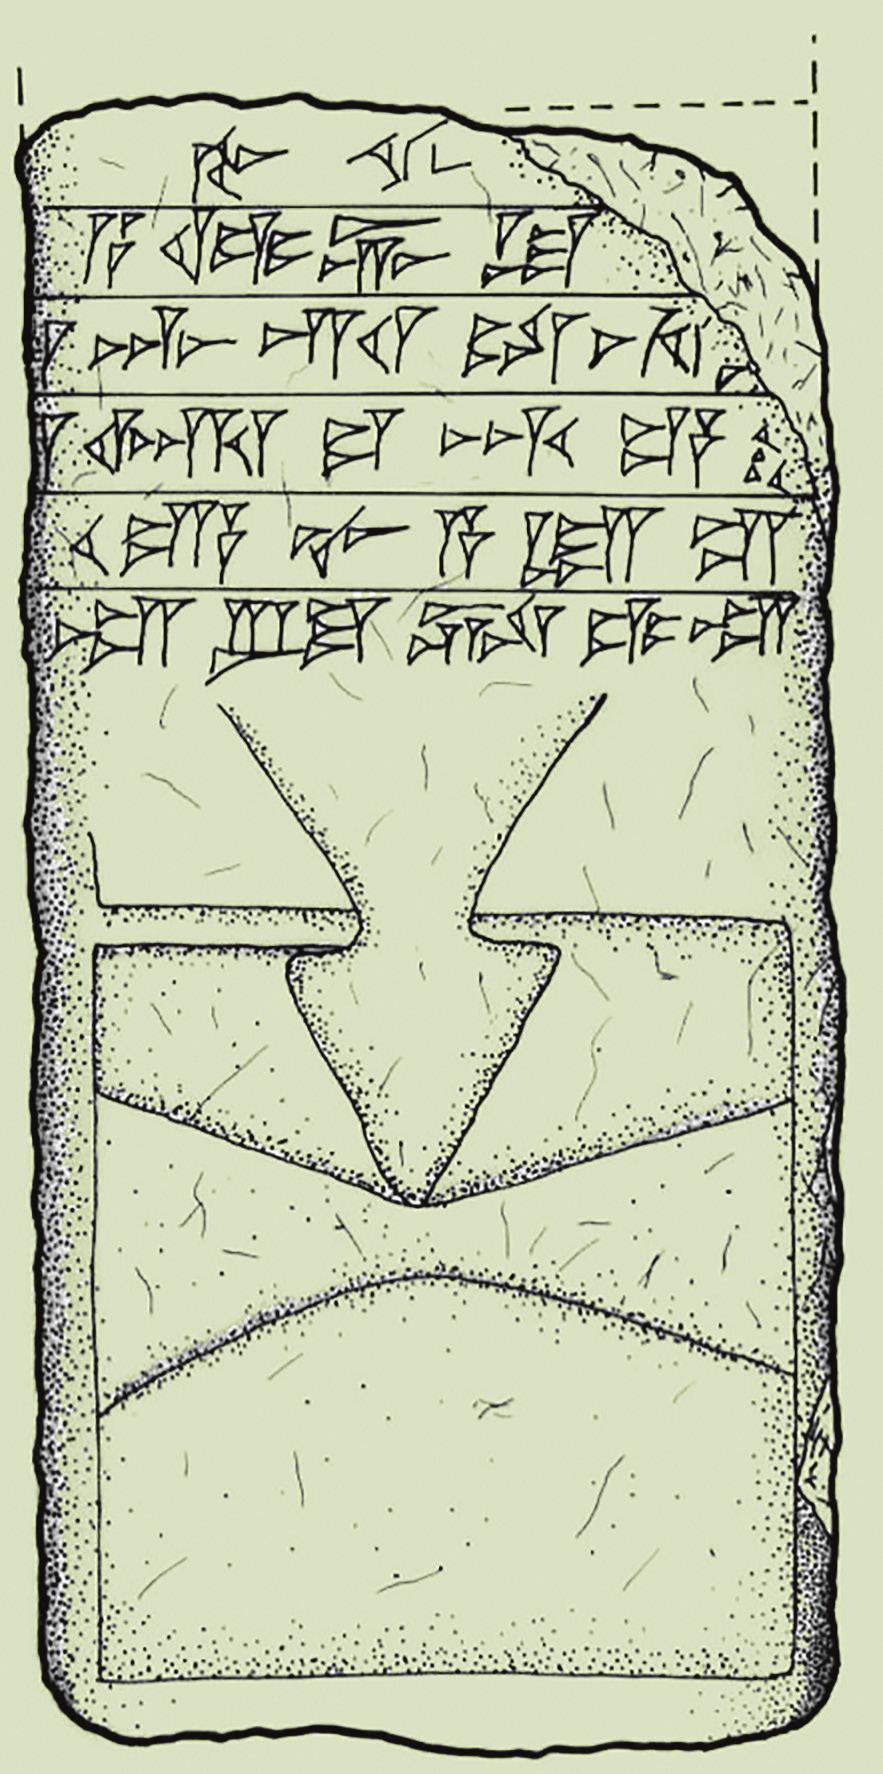 Sarduri Dönemine Ait Kitabe / The Urartian Inscription Dated to Sarduri II from Avnik Fortress Kalenin doğu tarafında Avnik Çayı nı gören ikinci bir su sarnıcı daha tespit